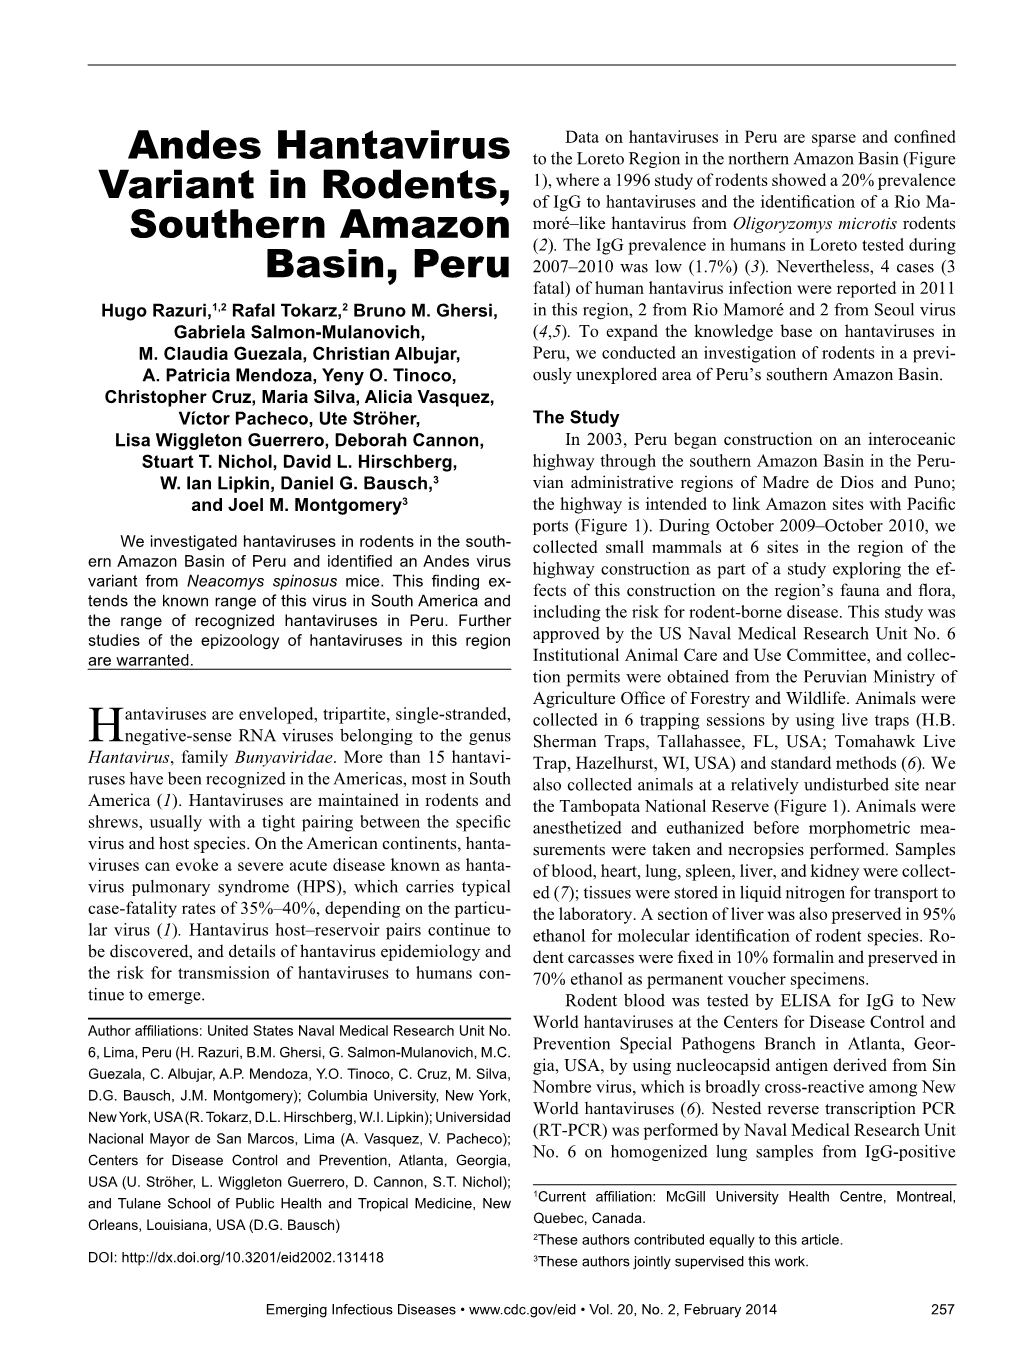 Andes Hantavirus Variant in Rodents, Southern Amazon Basin, Peru